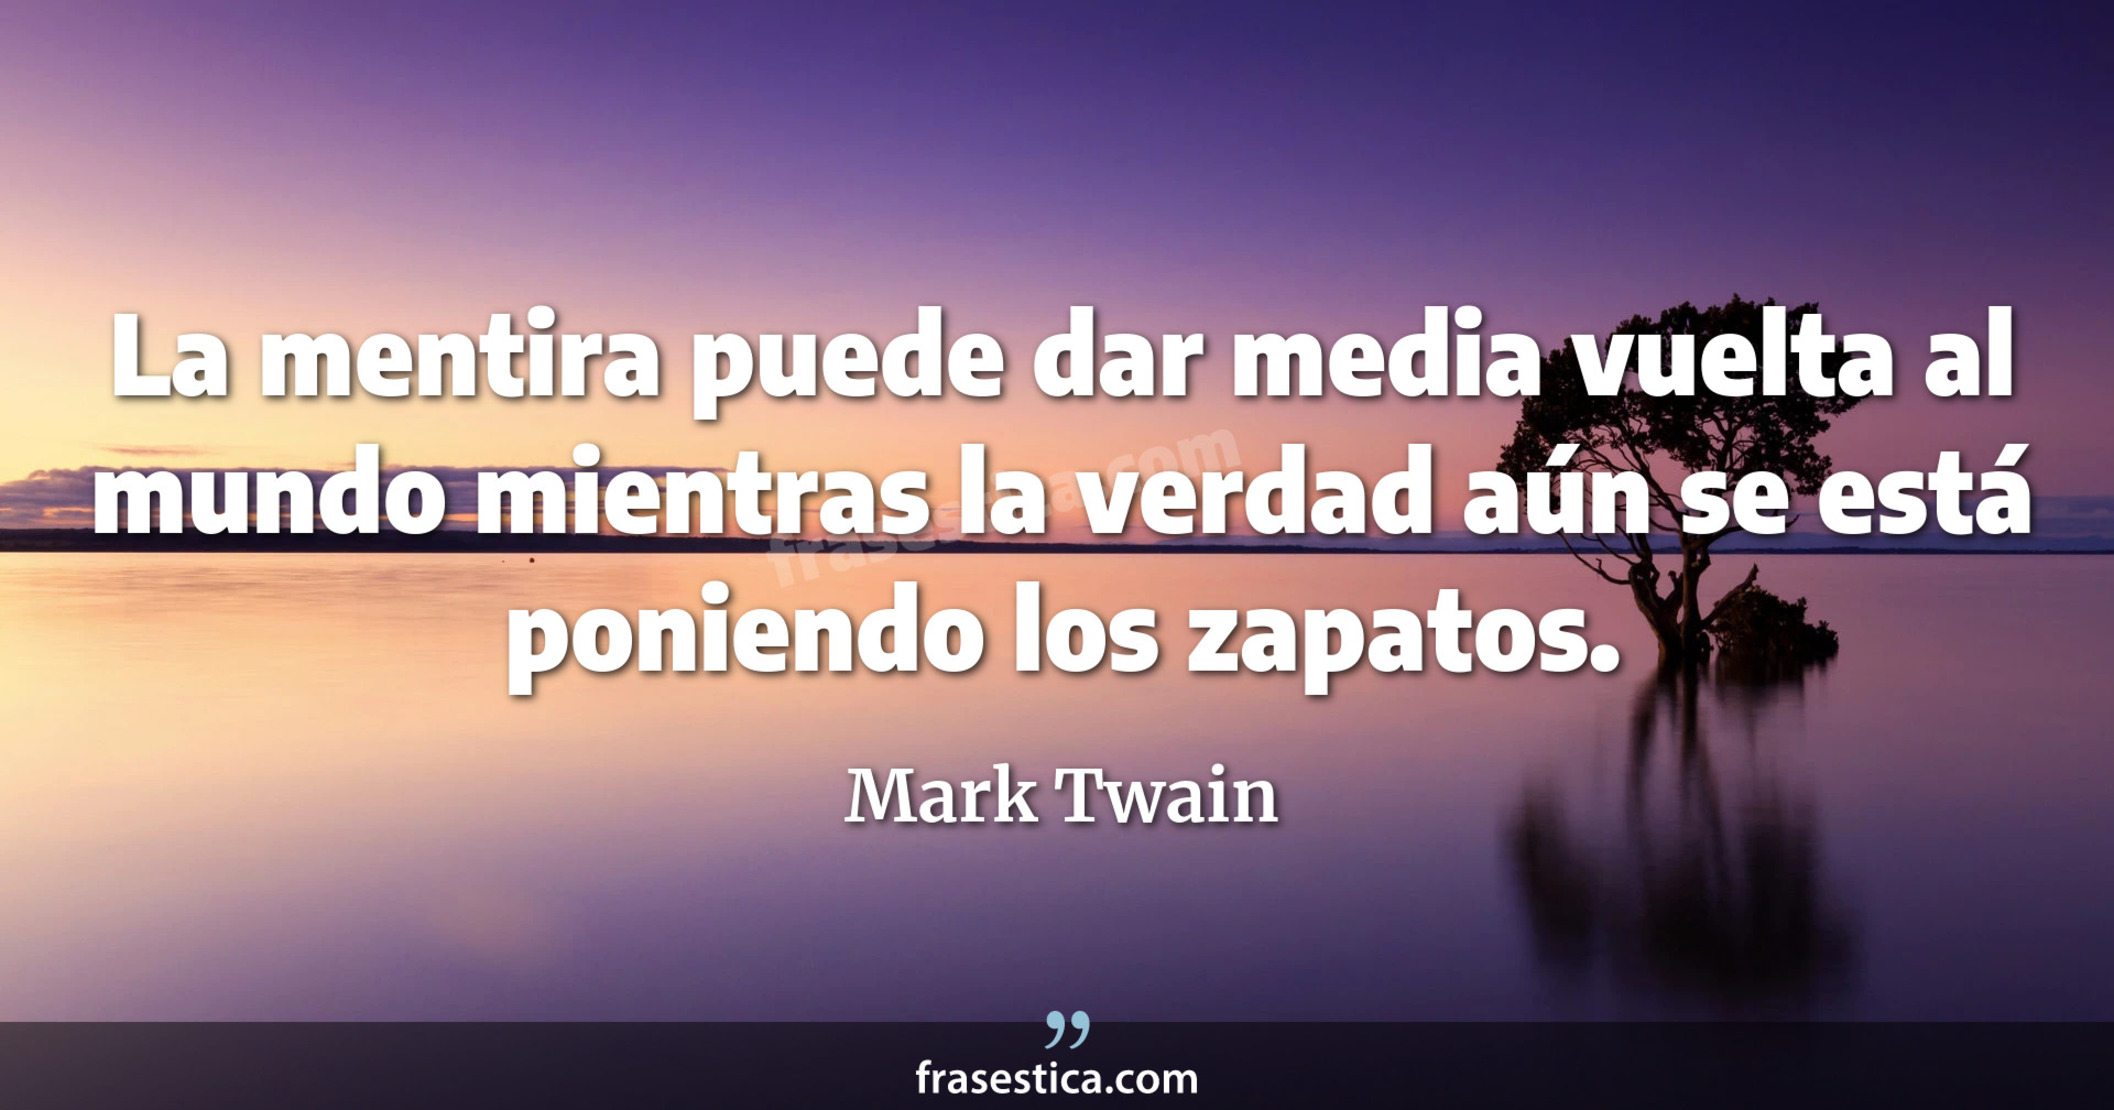 La mentira puede dar media vuelta al mundo mientras la verdad aún se está poniendo los zapatos. - Mark Twain